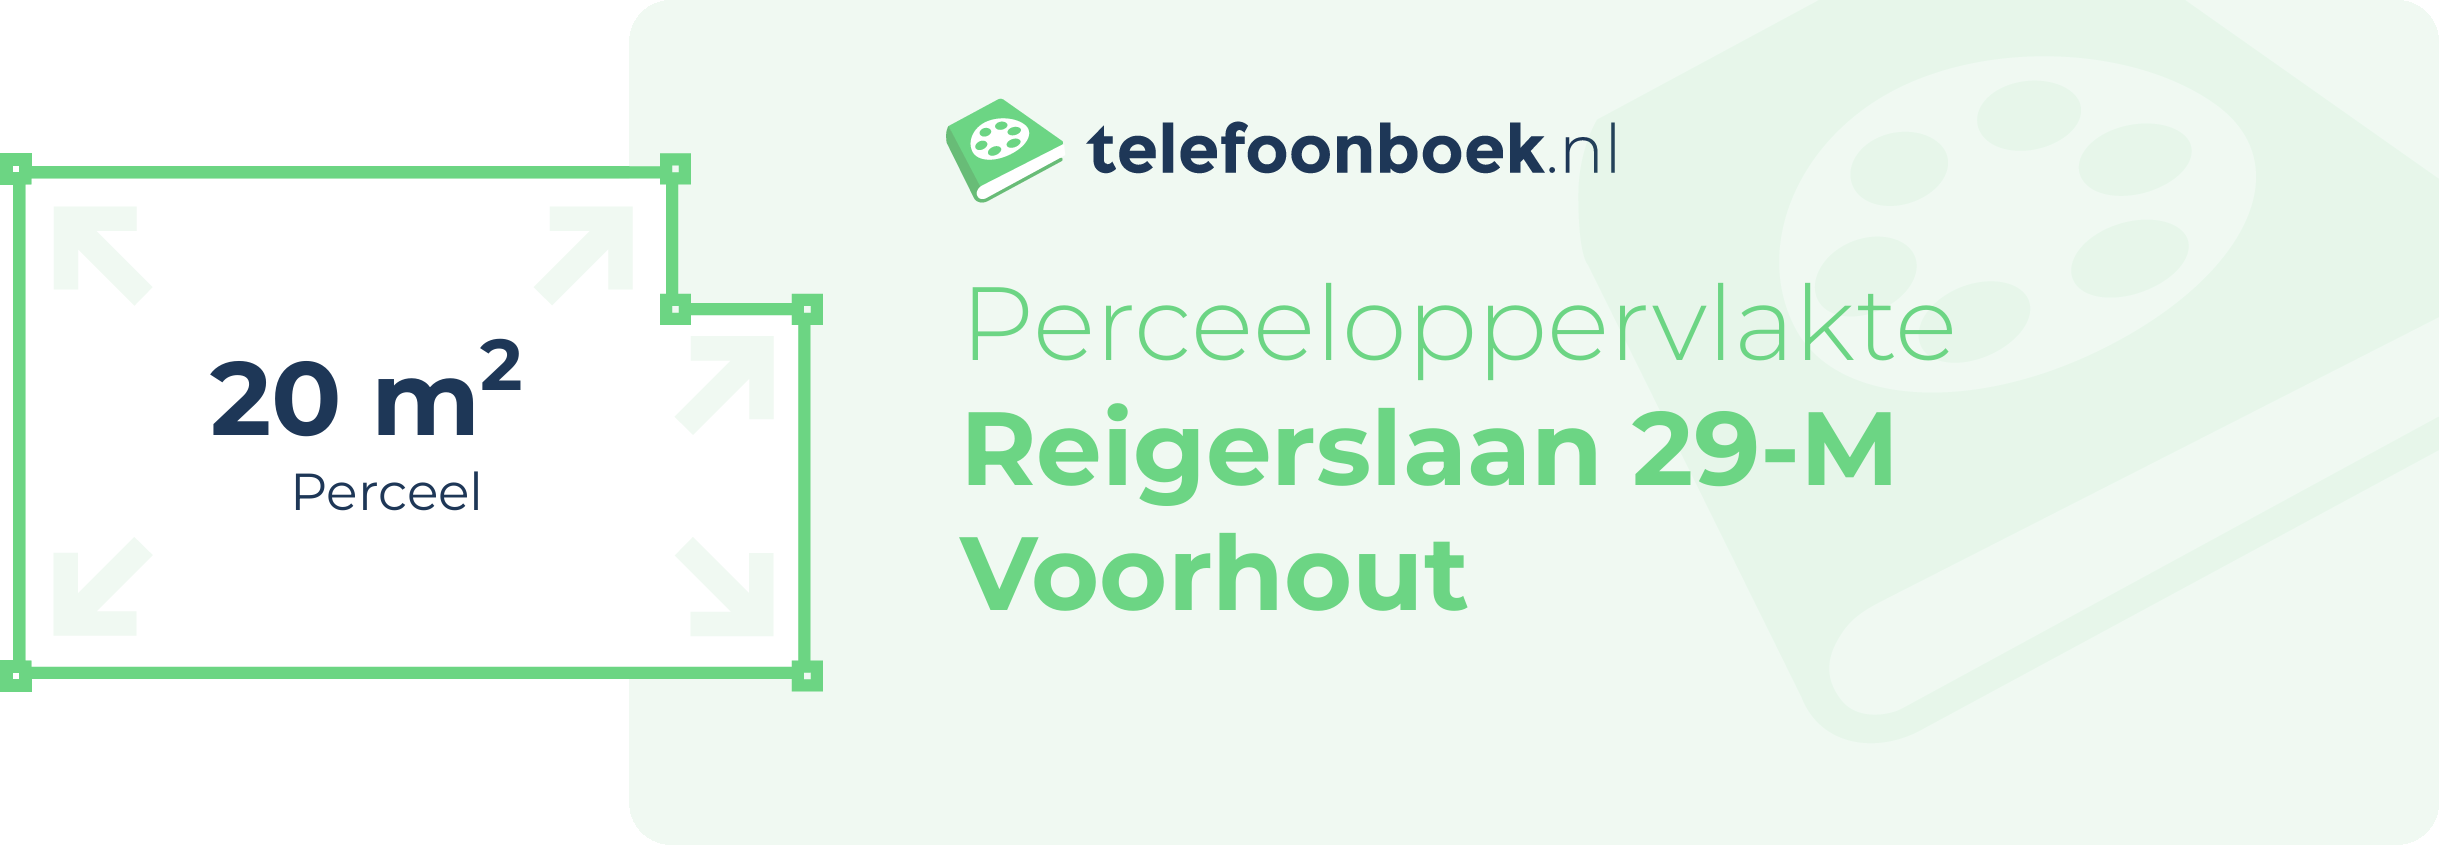 Perceeloppervlakte Reigerslaan 29-M Voorhout